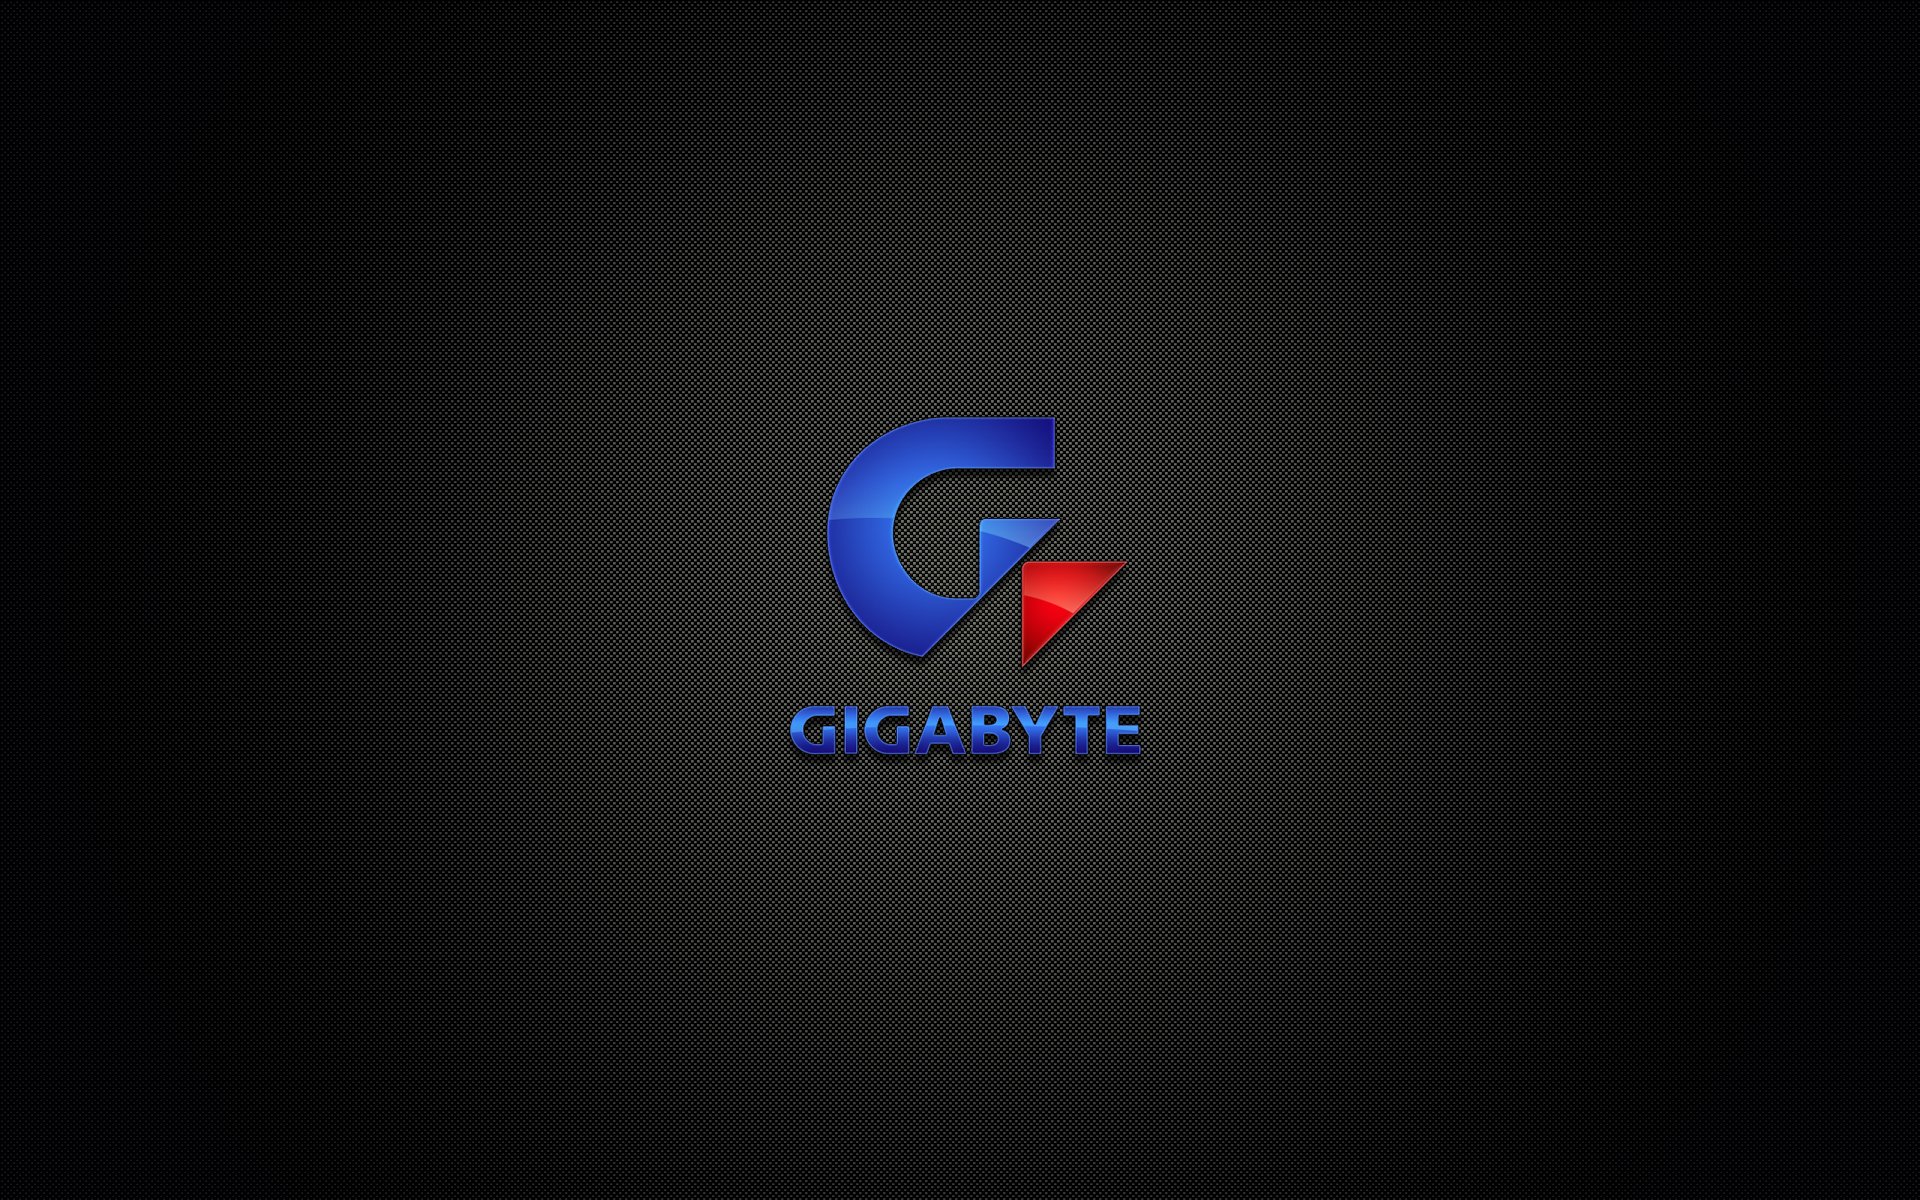 gigabyte, technology